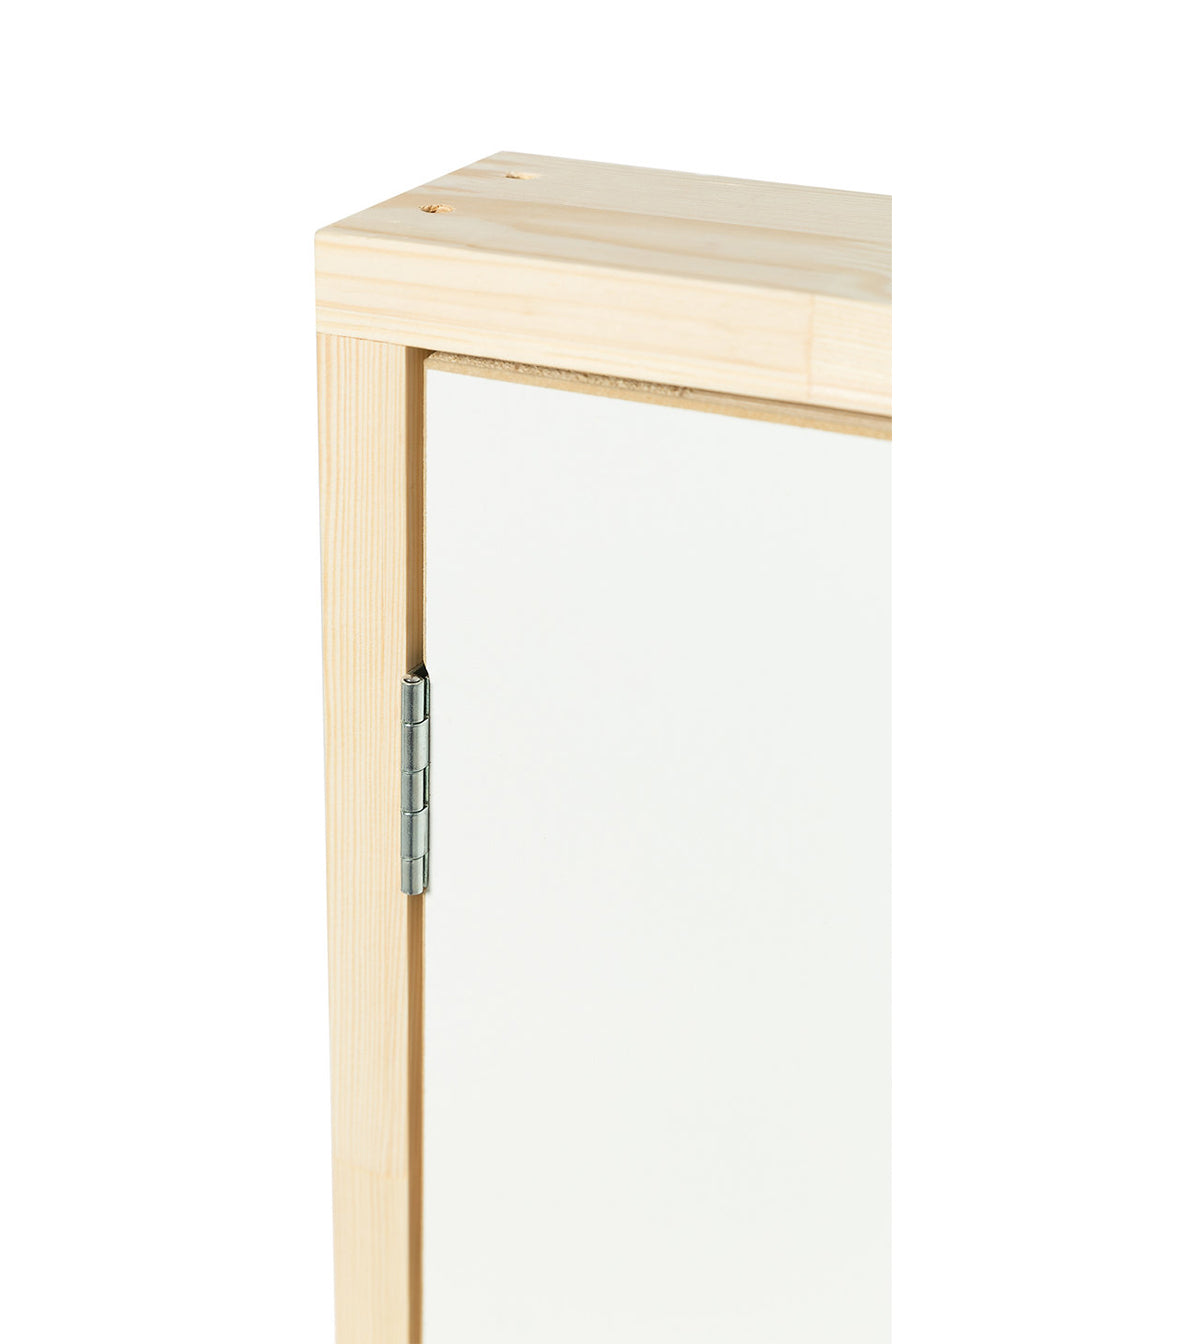 DK TERMO - Wooden Insulated Access Door Panel - 43 in. x 23.6 in.